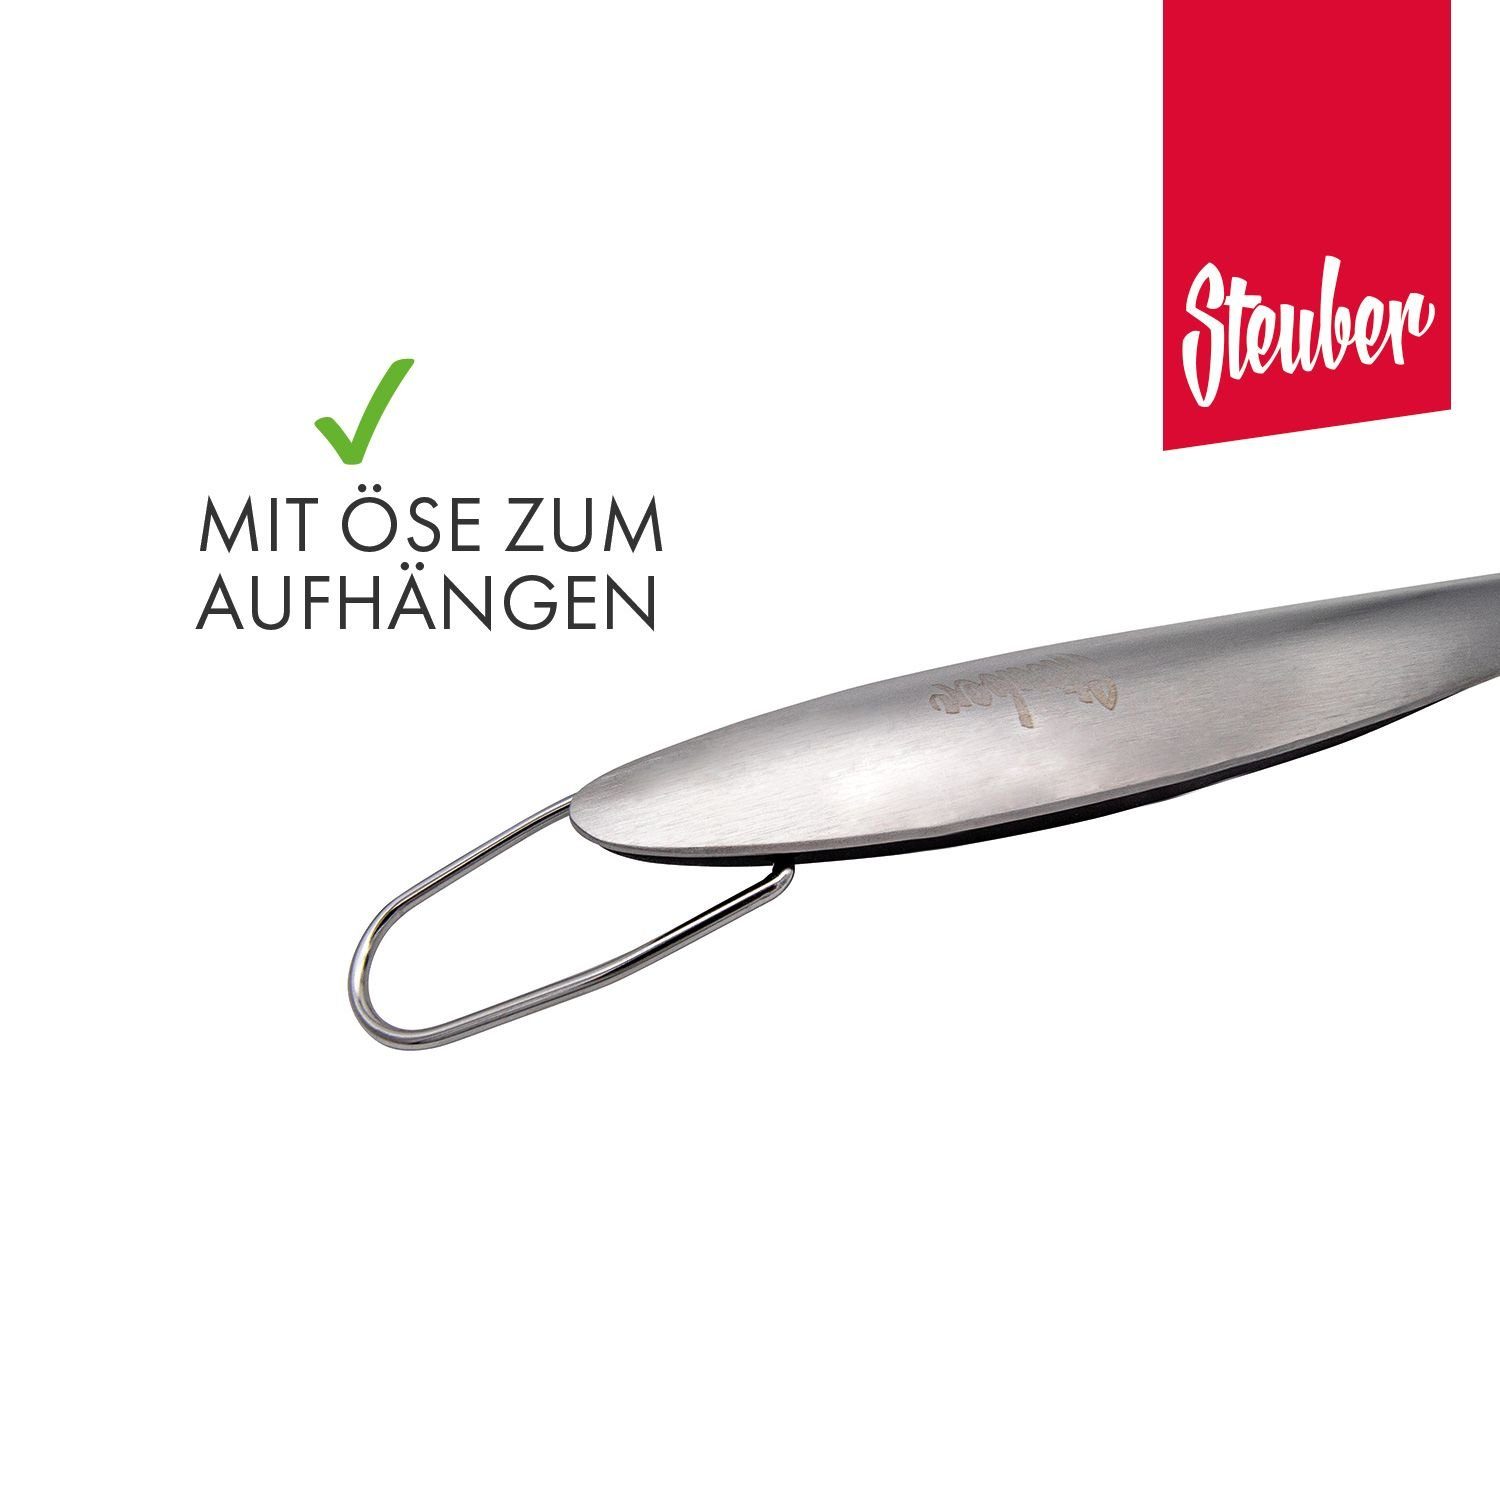 Grillwender Fläche Premium präziser Steuber Line, 6.5 Grillwender cm